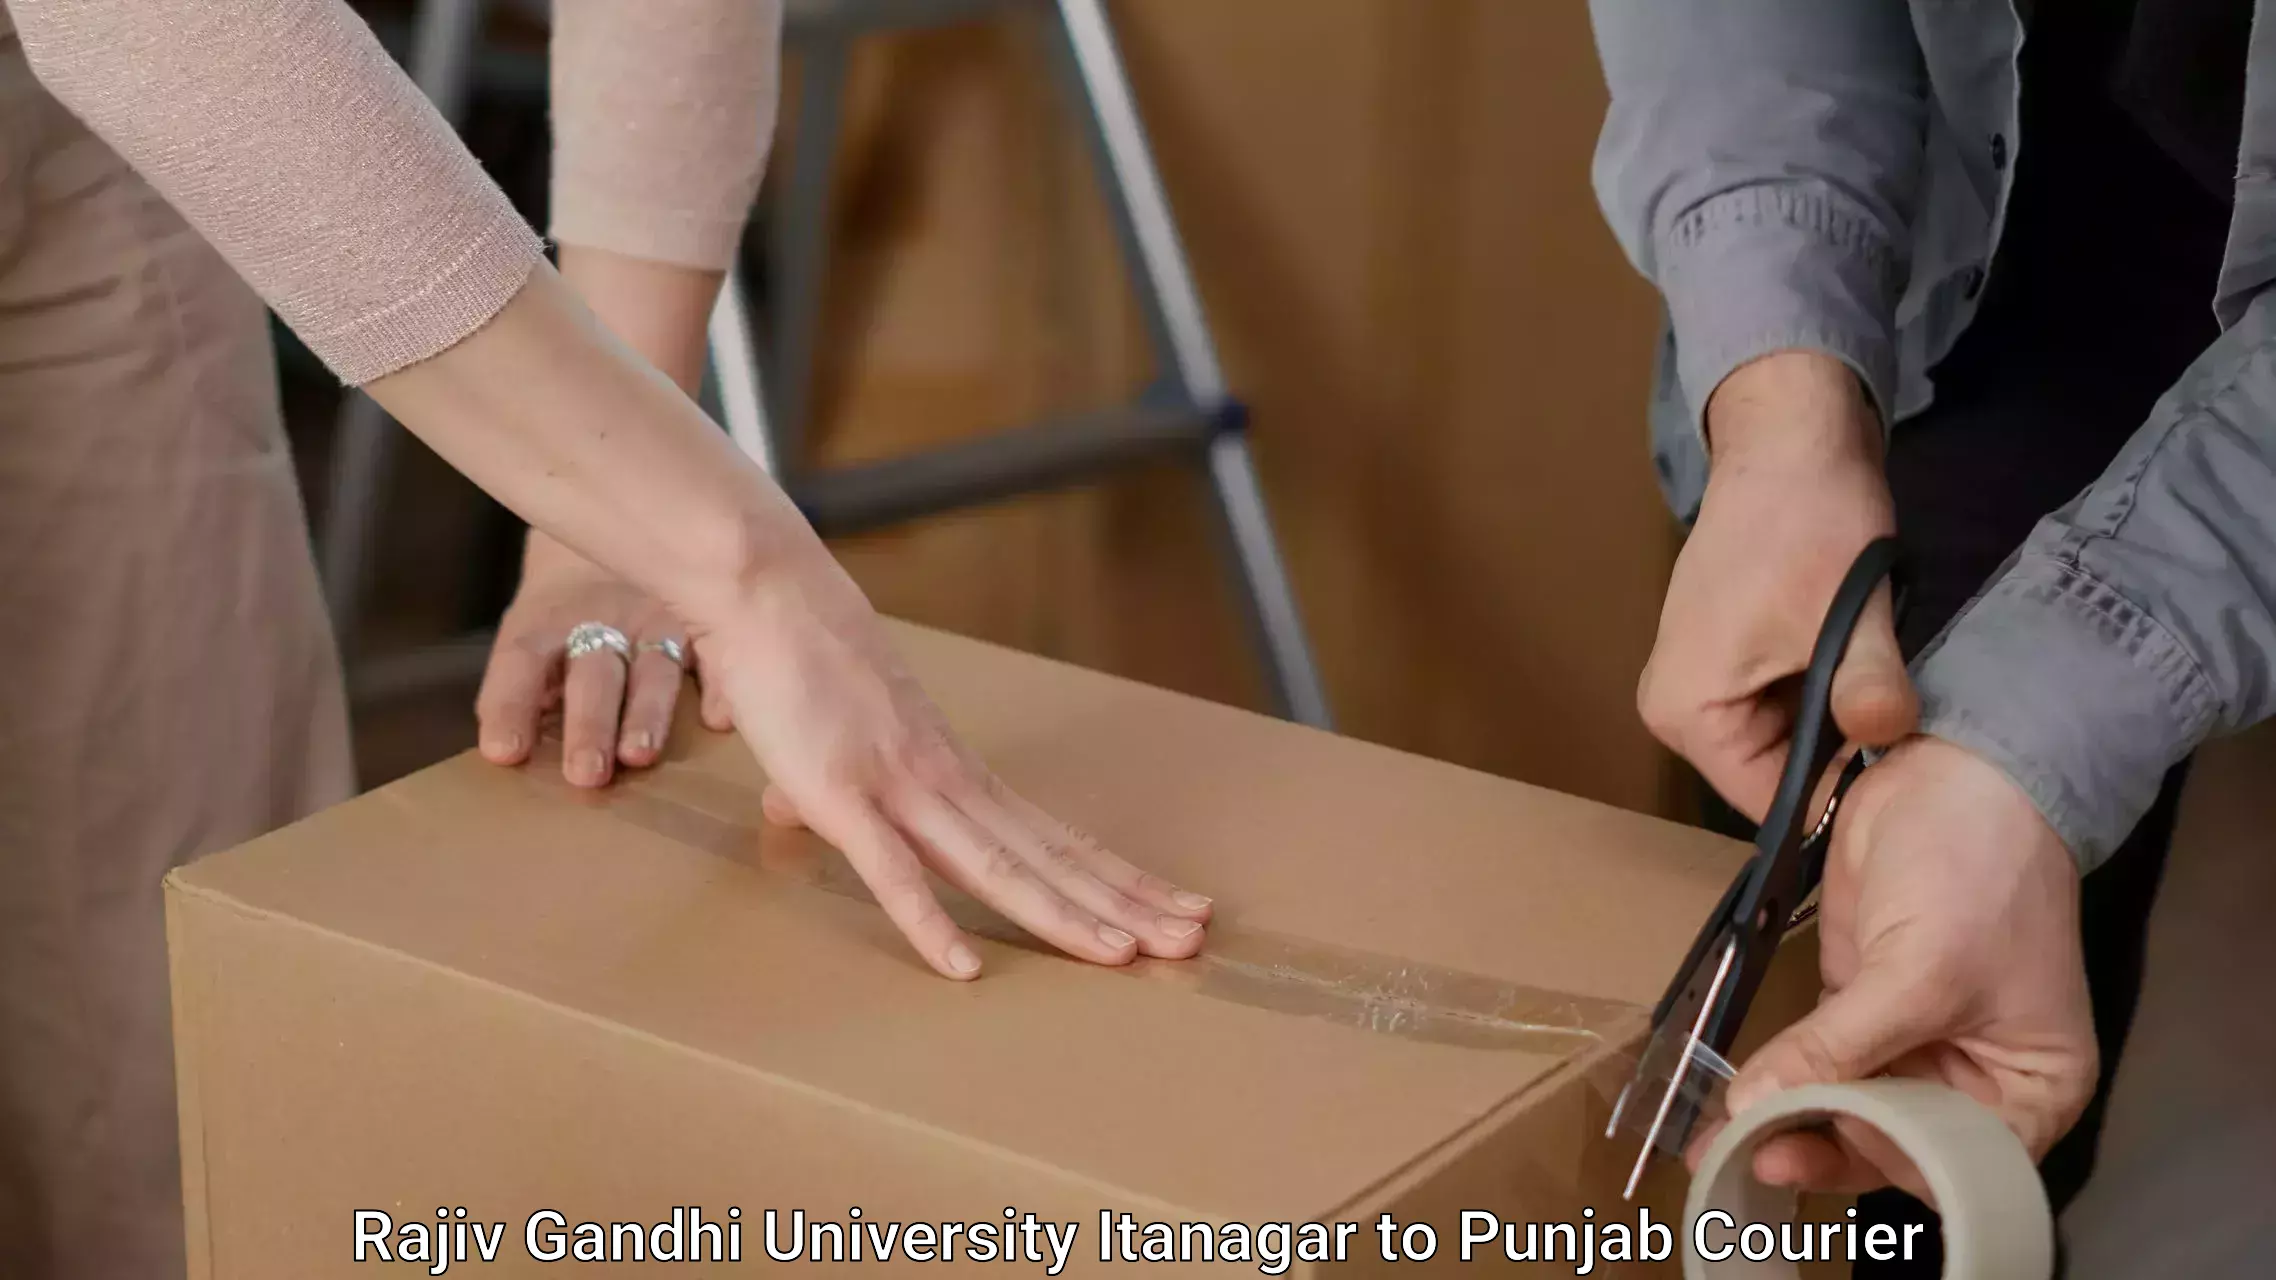 Furniture moving plans Rajiv Gandhi University Itanagar to Amritsar